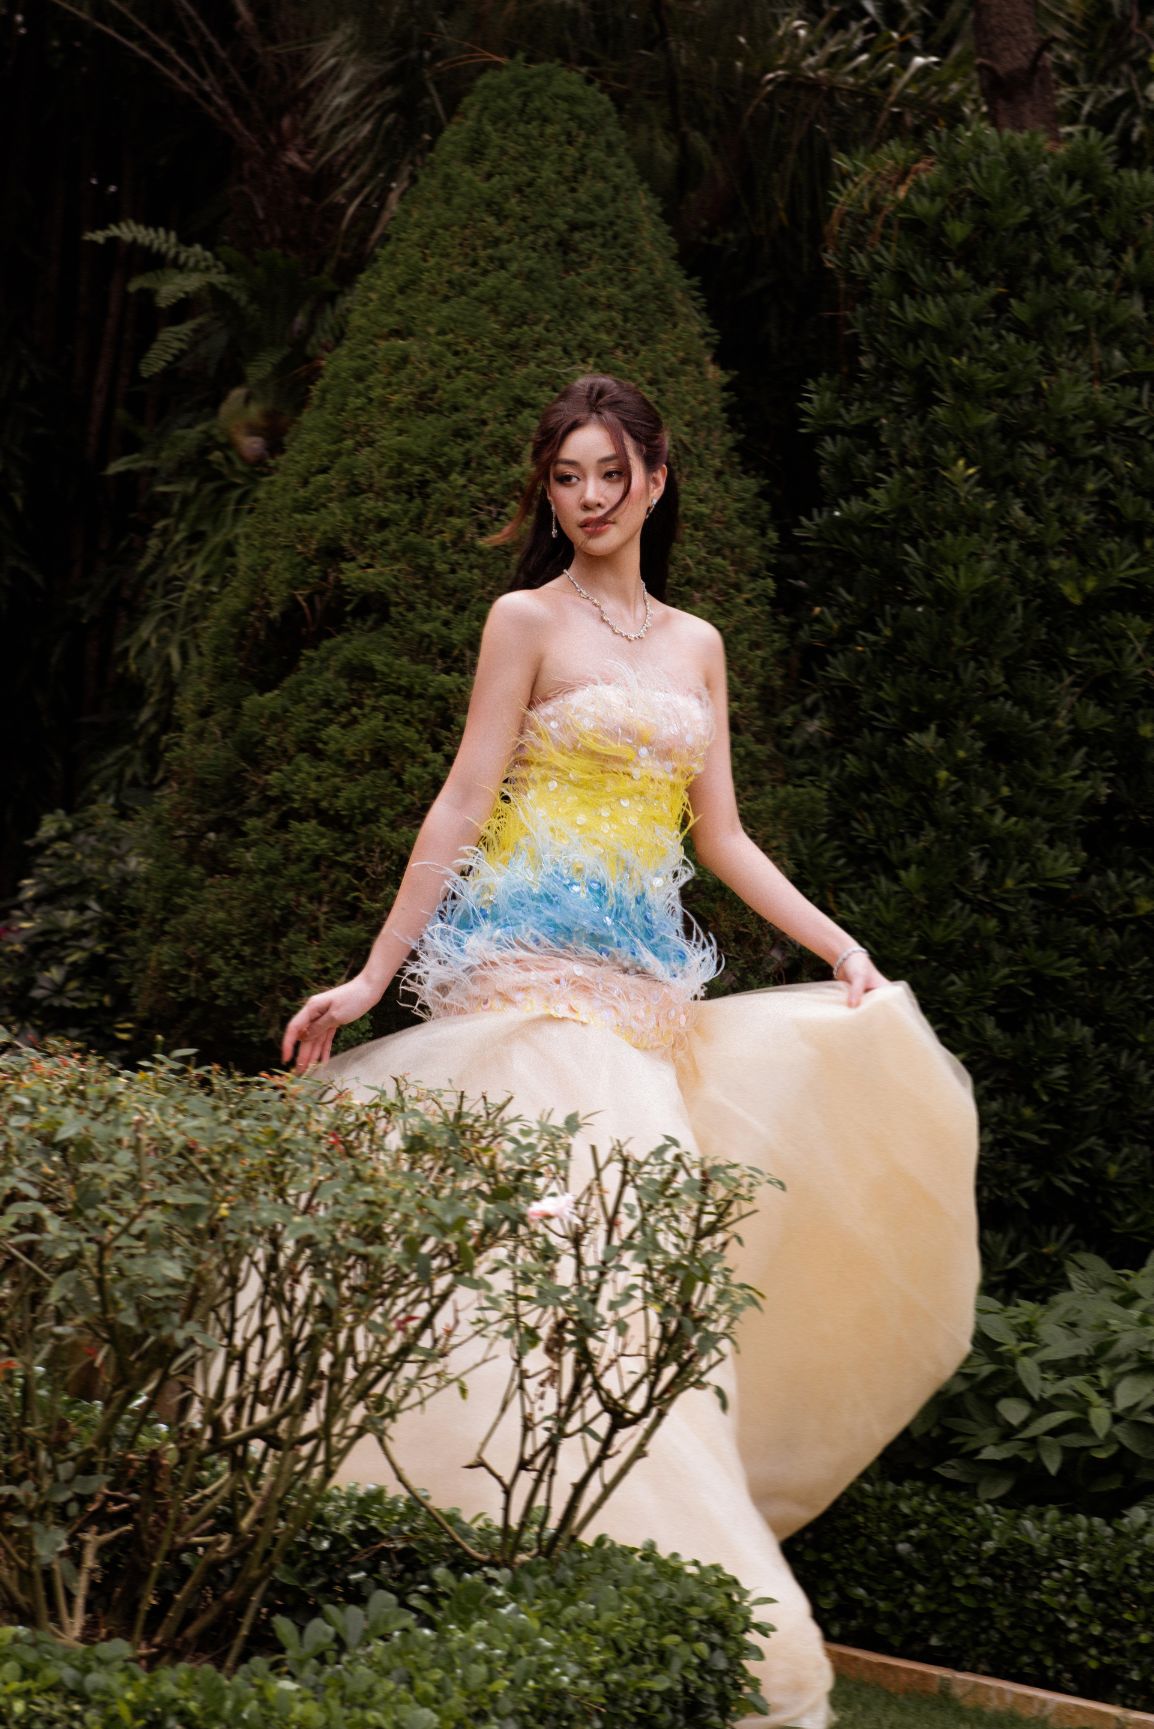 Hoa hậu Khánh Vân 4 Hoa hậu Khánh Vân ngọt ngào trong bộ ảnh mang âm hưởng cổ tích